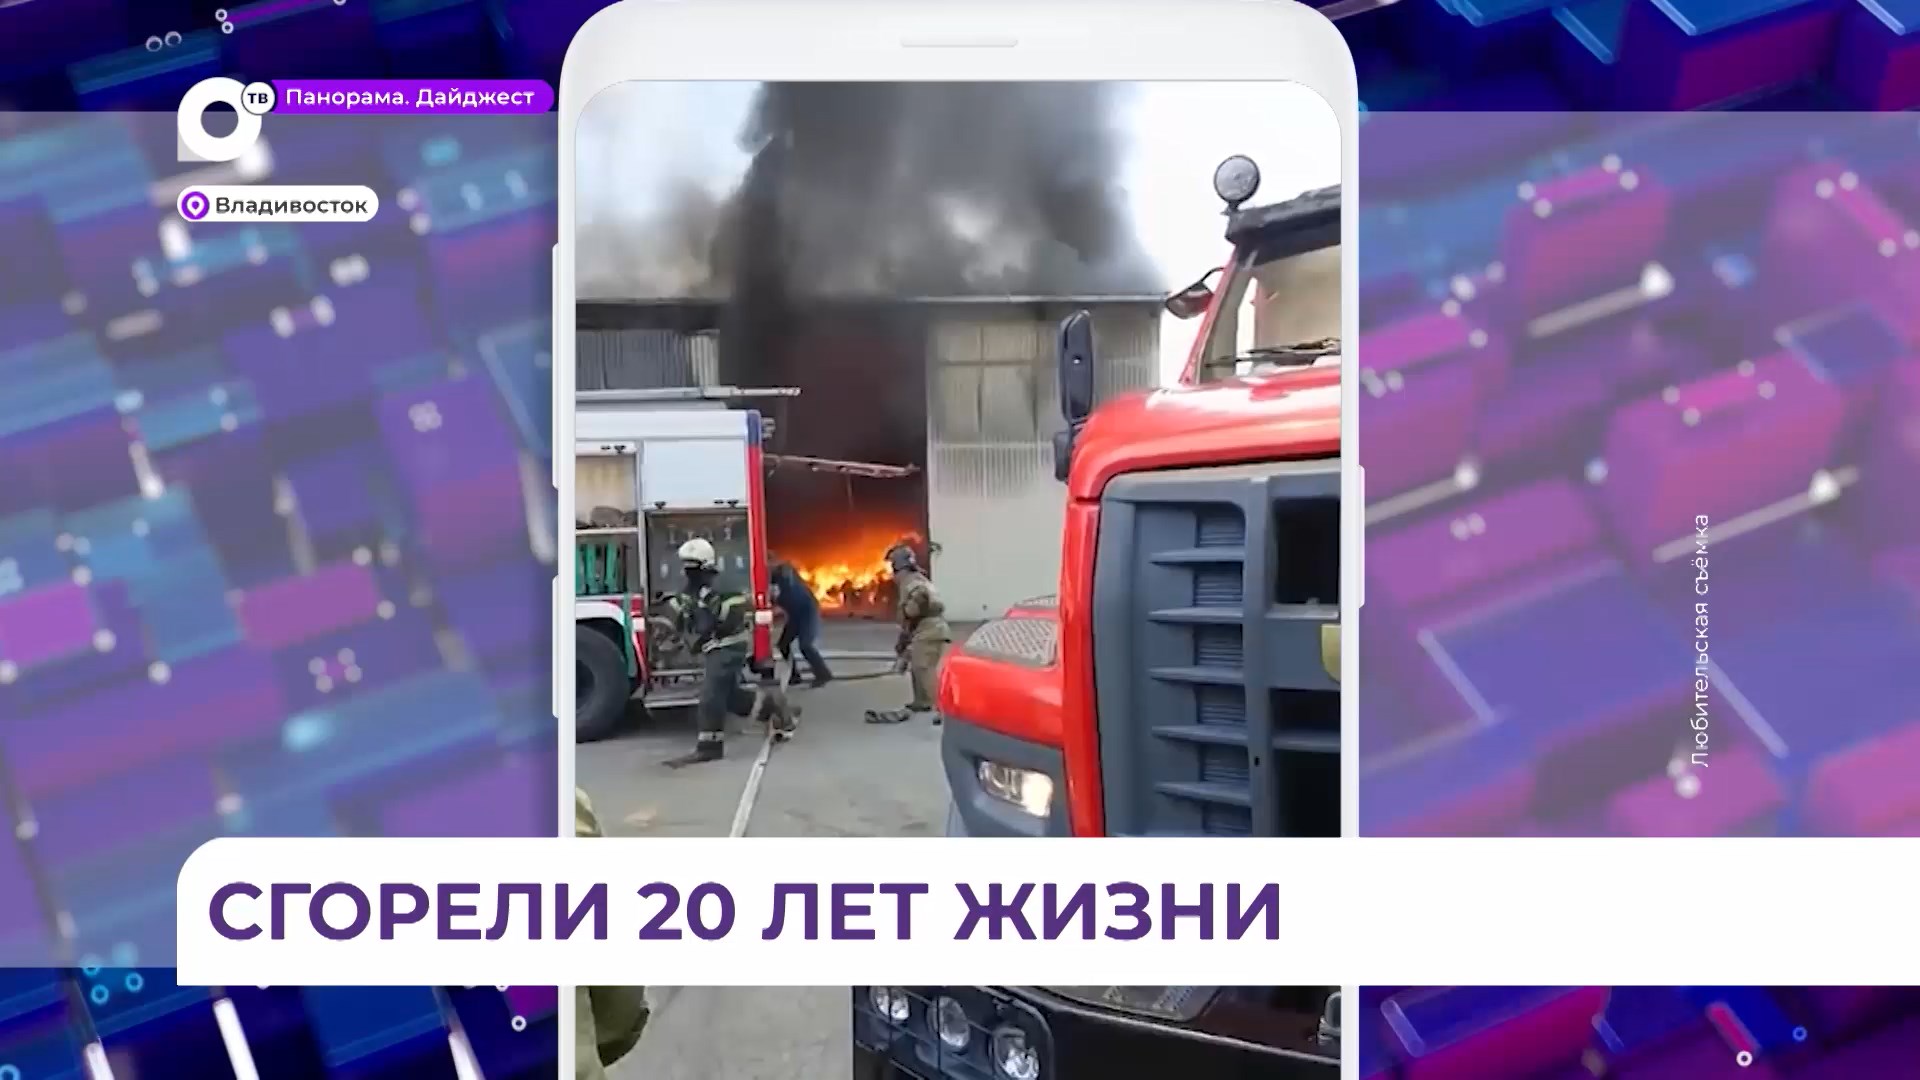 Во Владивостоке на улице Катерной днем загорелся склад вблизи взрывоопасных цистерн